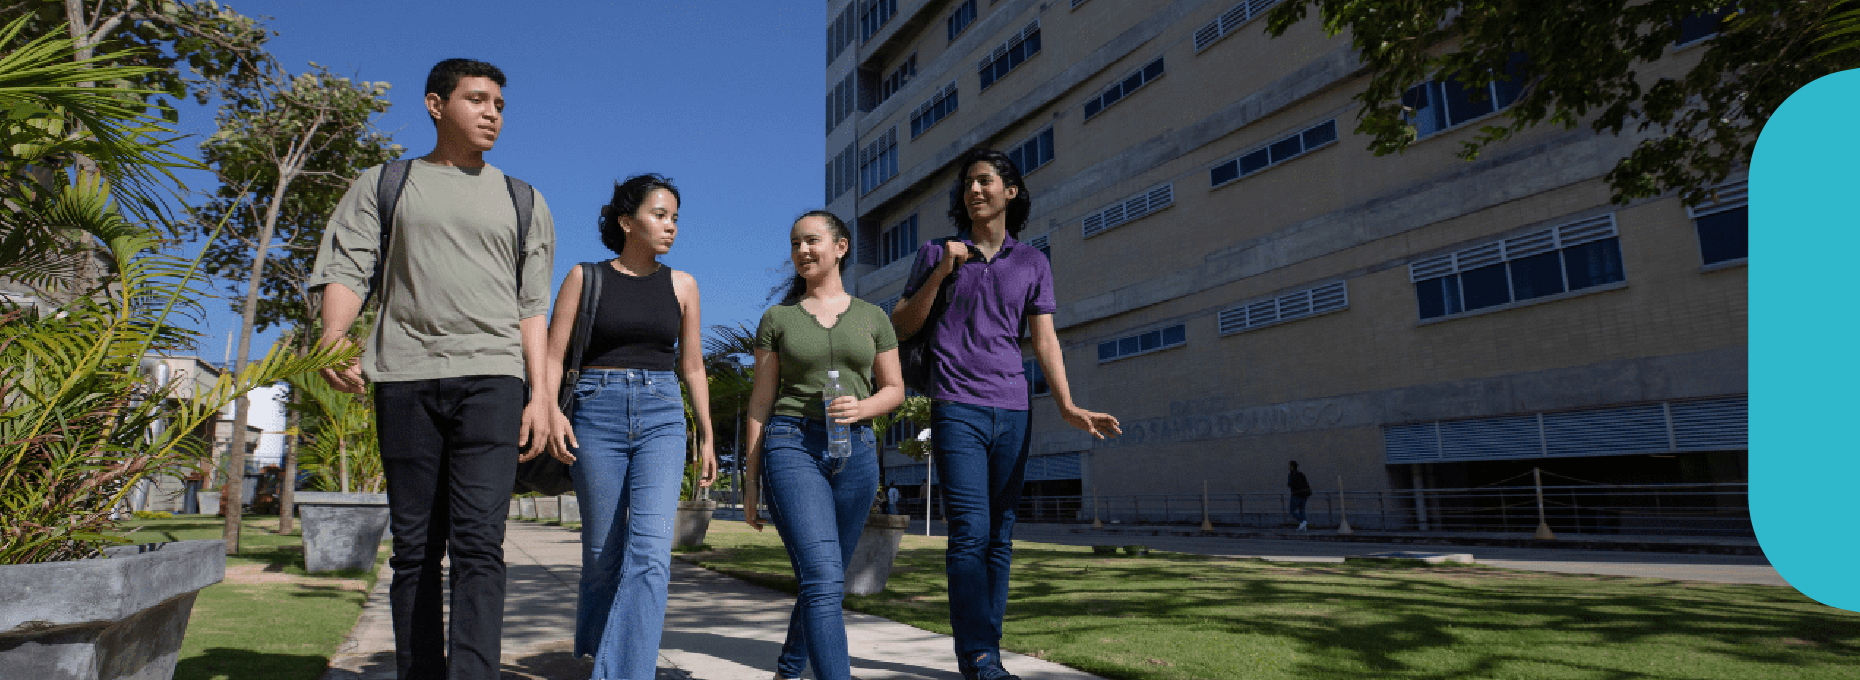 Foto de estudiantes caminando por el campus universitario